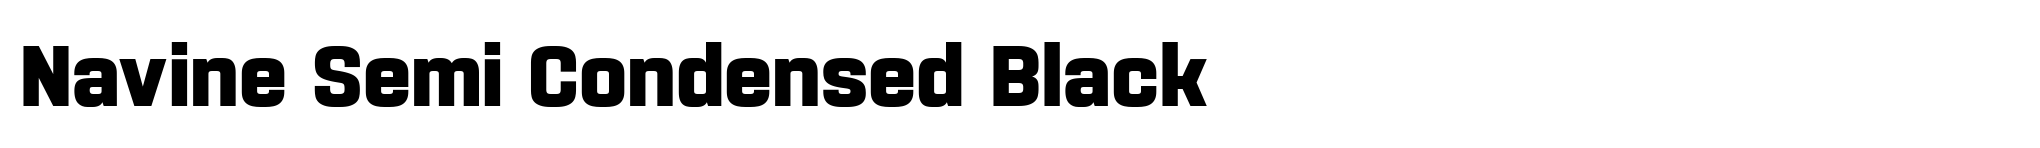 Navine Semi Condensed Black image